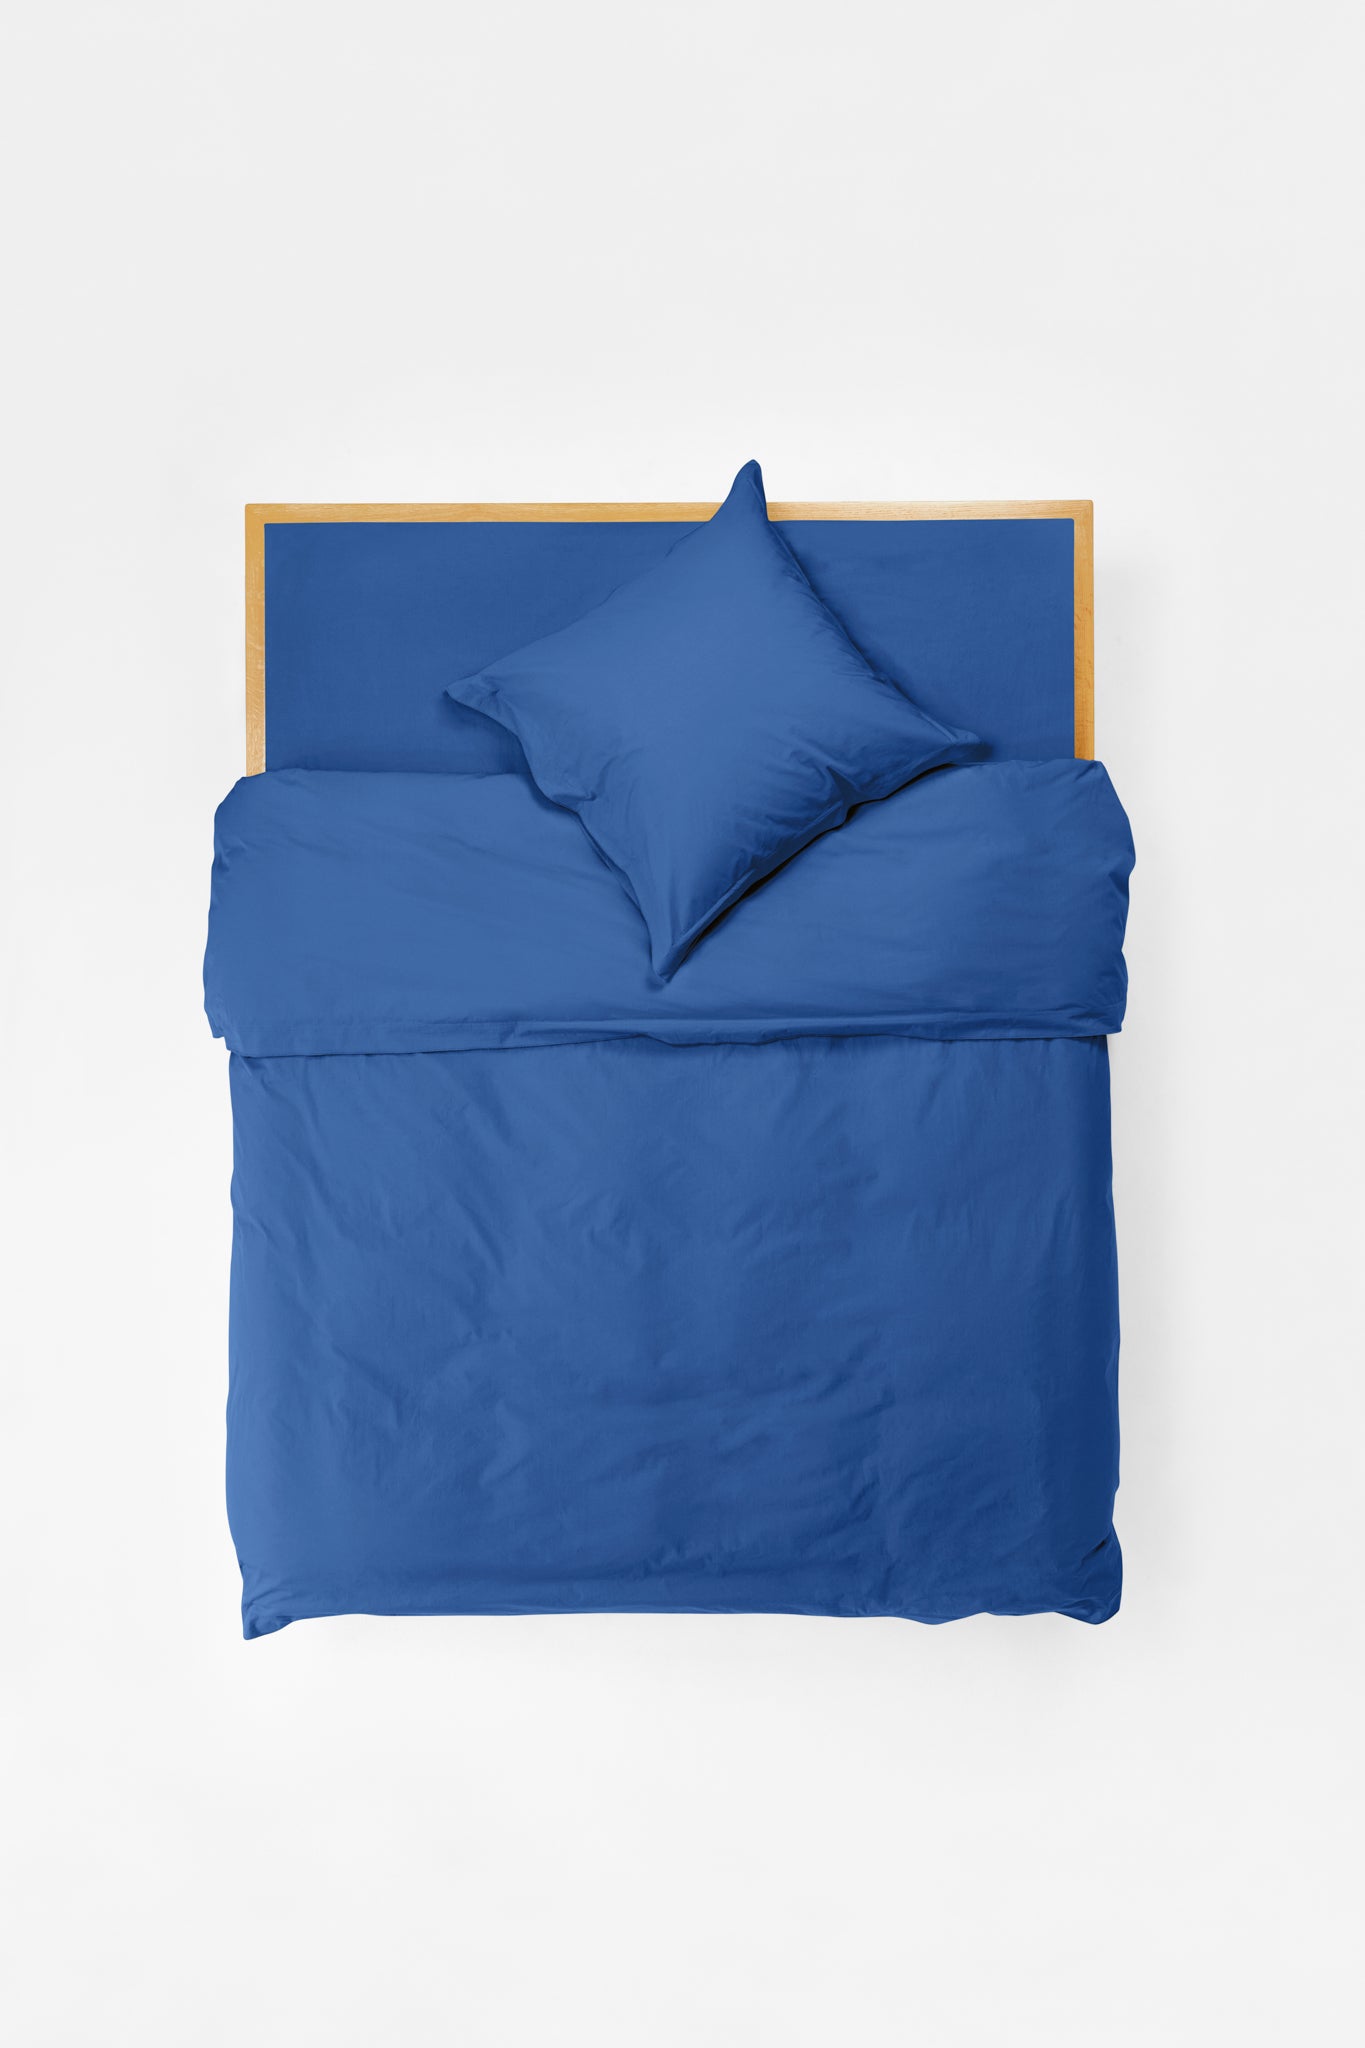 Euro Pillowcase Pair in Blue Blue